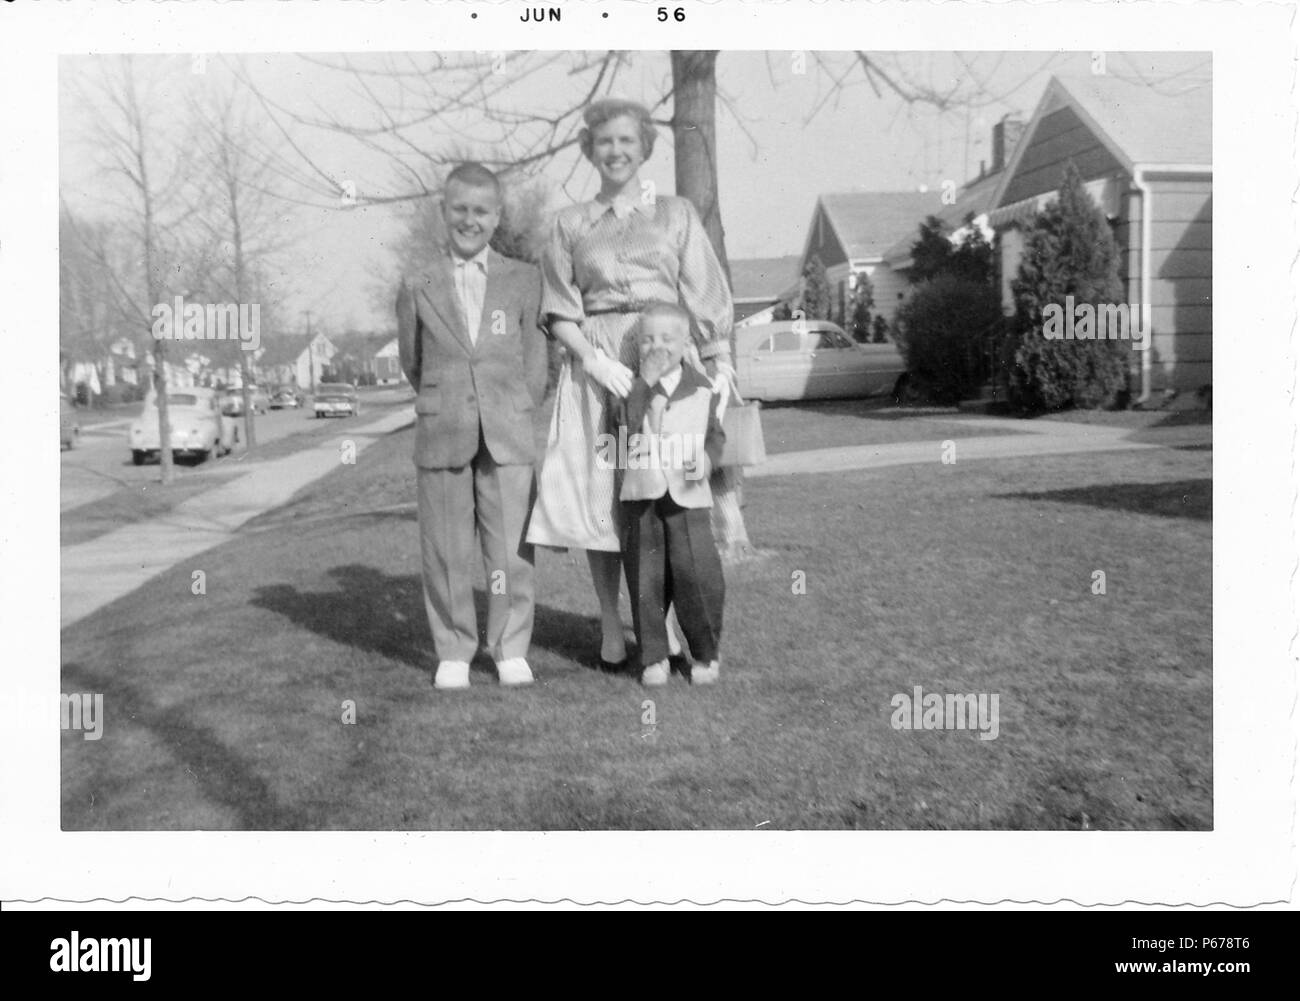 Schwarz-weiß Foto, zeigt eine kurzhaarige Frau, trug einen Rock, Bluse und Handschuhe, mit zwei Jungen posieren, beide trugen Anzüge, die Kleinere trägt eine zweifarbige Jacke, mit Bäumen, Oldtimer und s-Häuser im Hintergrund sichtbar, wahrscheinlich in Ohio, Juni, 1956 fotografiert. () Stockfoto